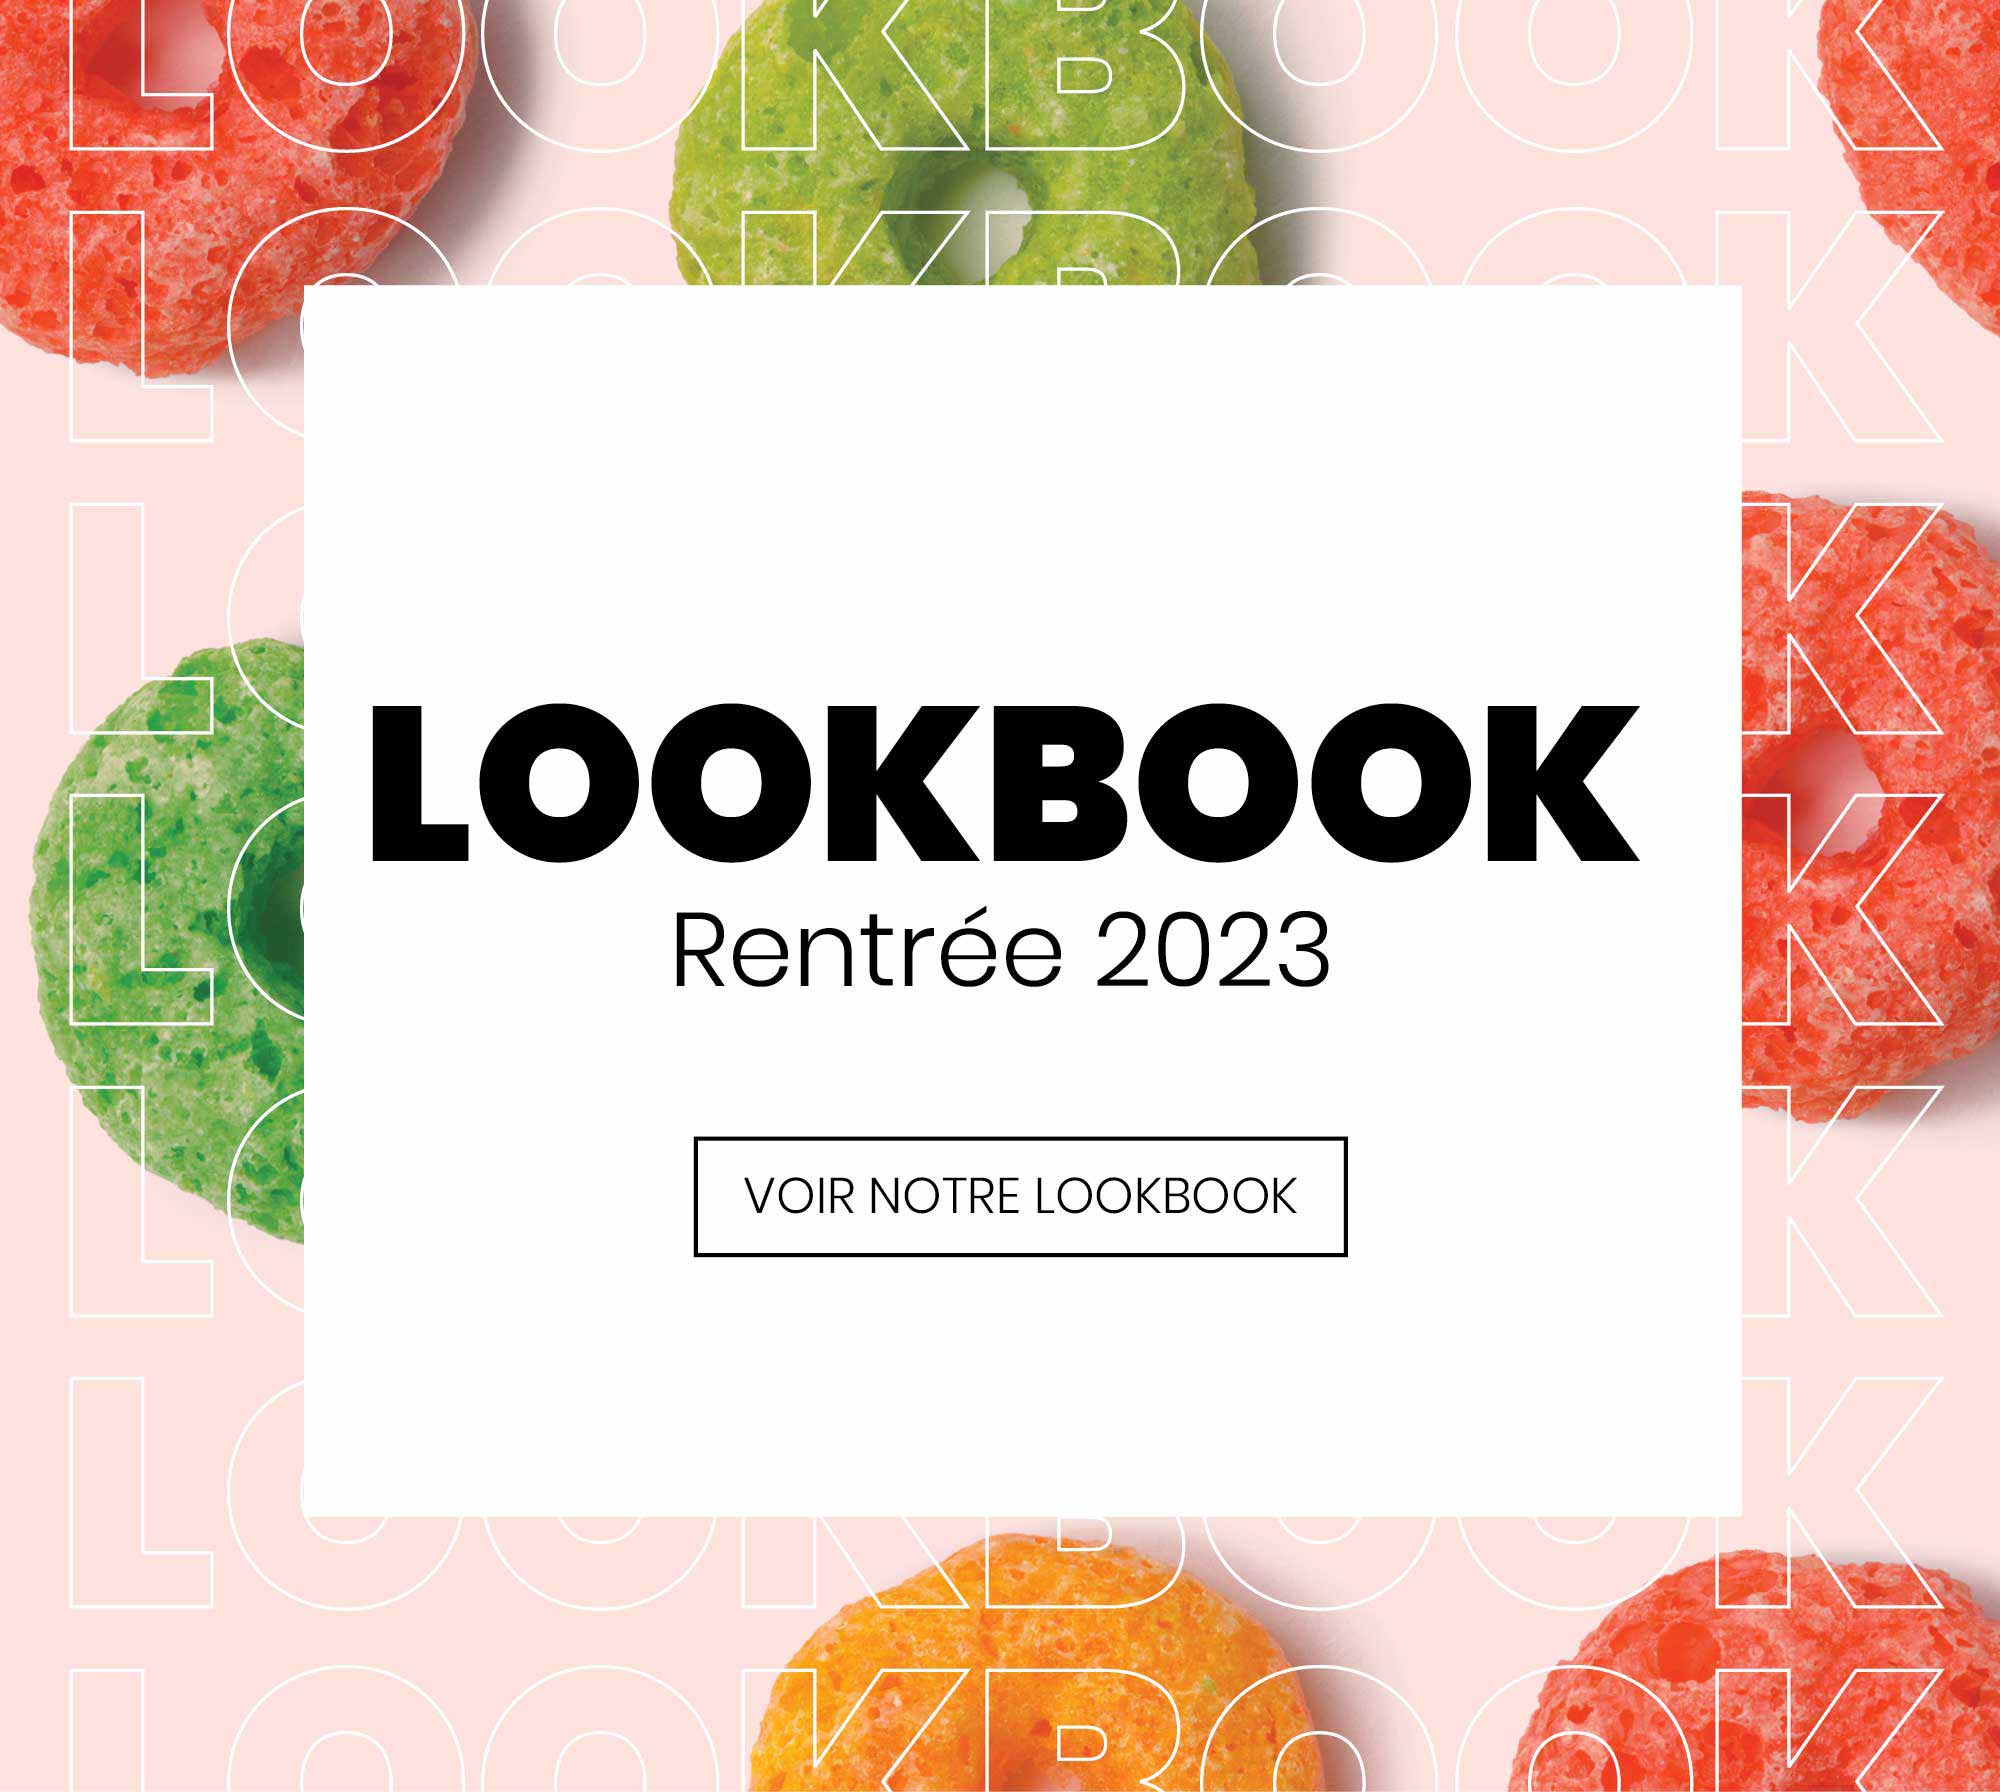 Look Book - Rentrée 2023